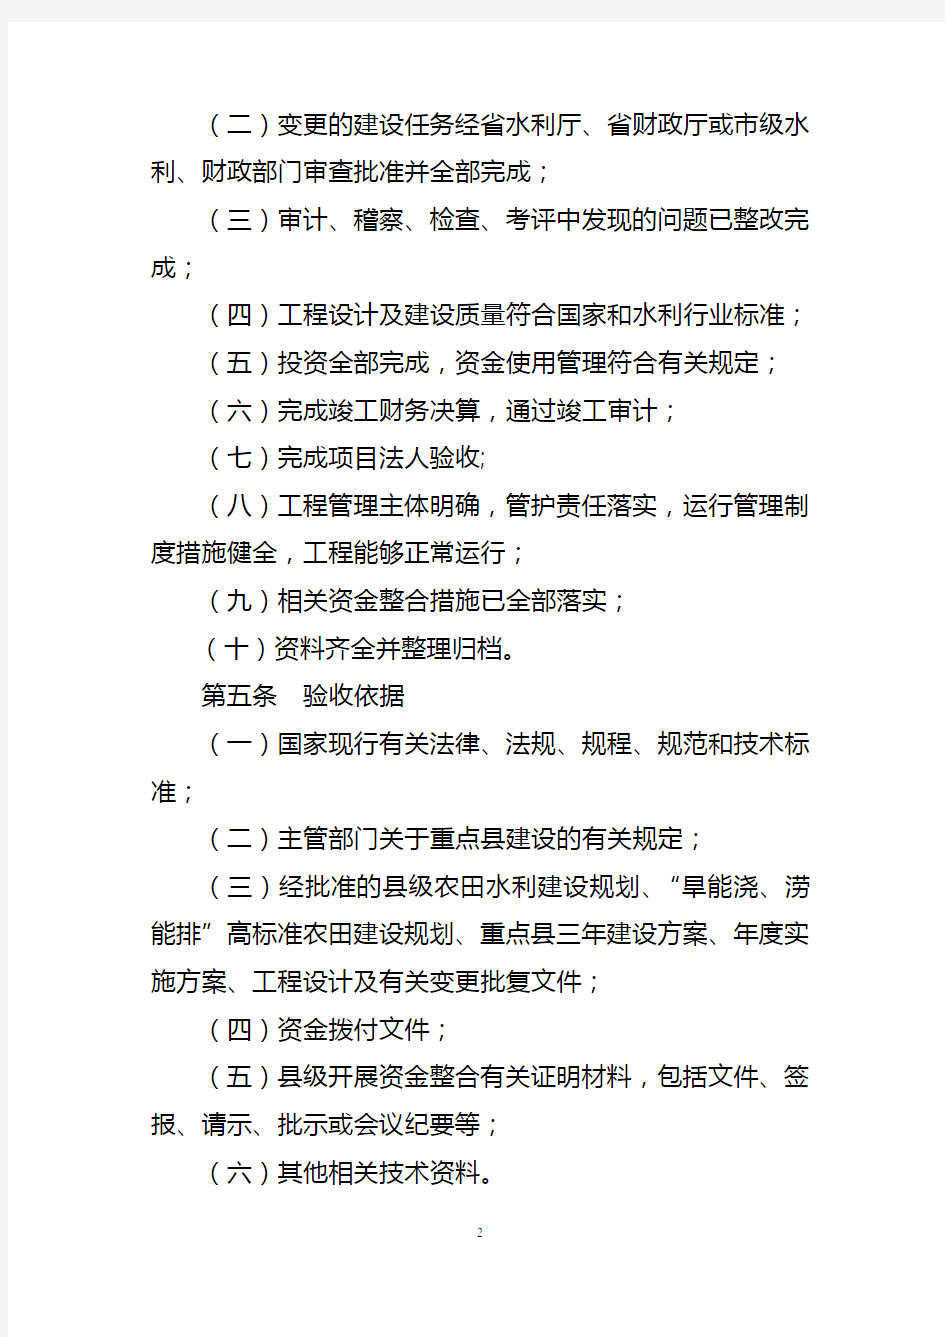 山东省小型农田水利重点县项目验收办法(2014.6.16)定稿